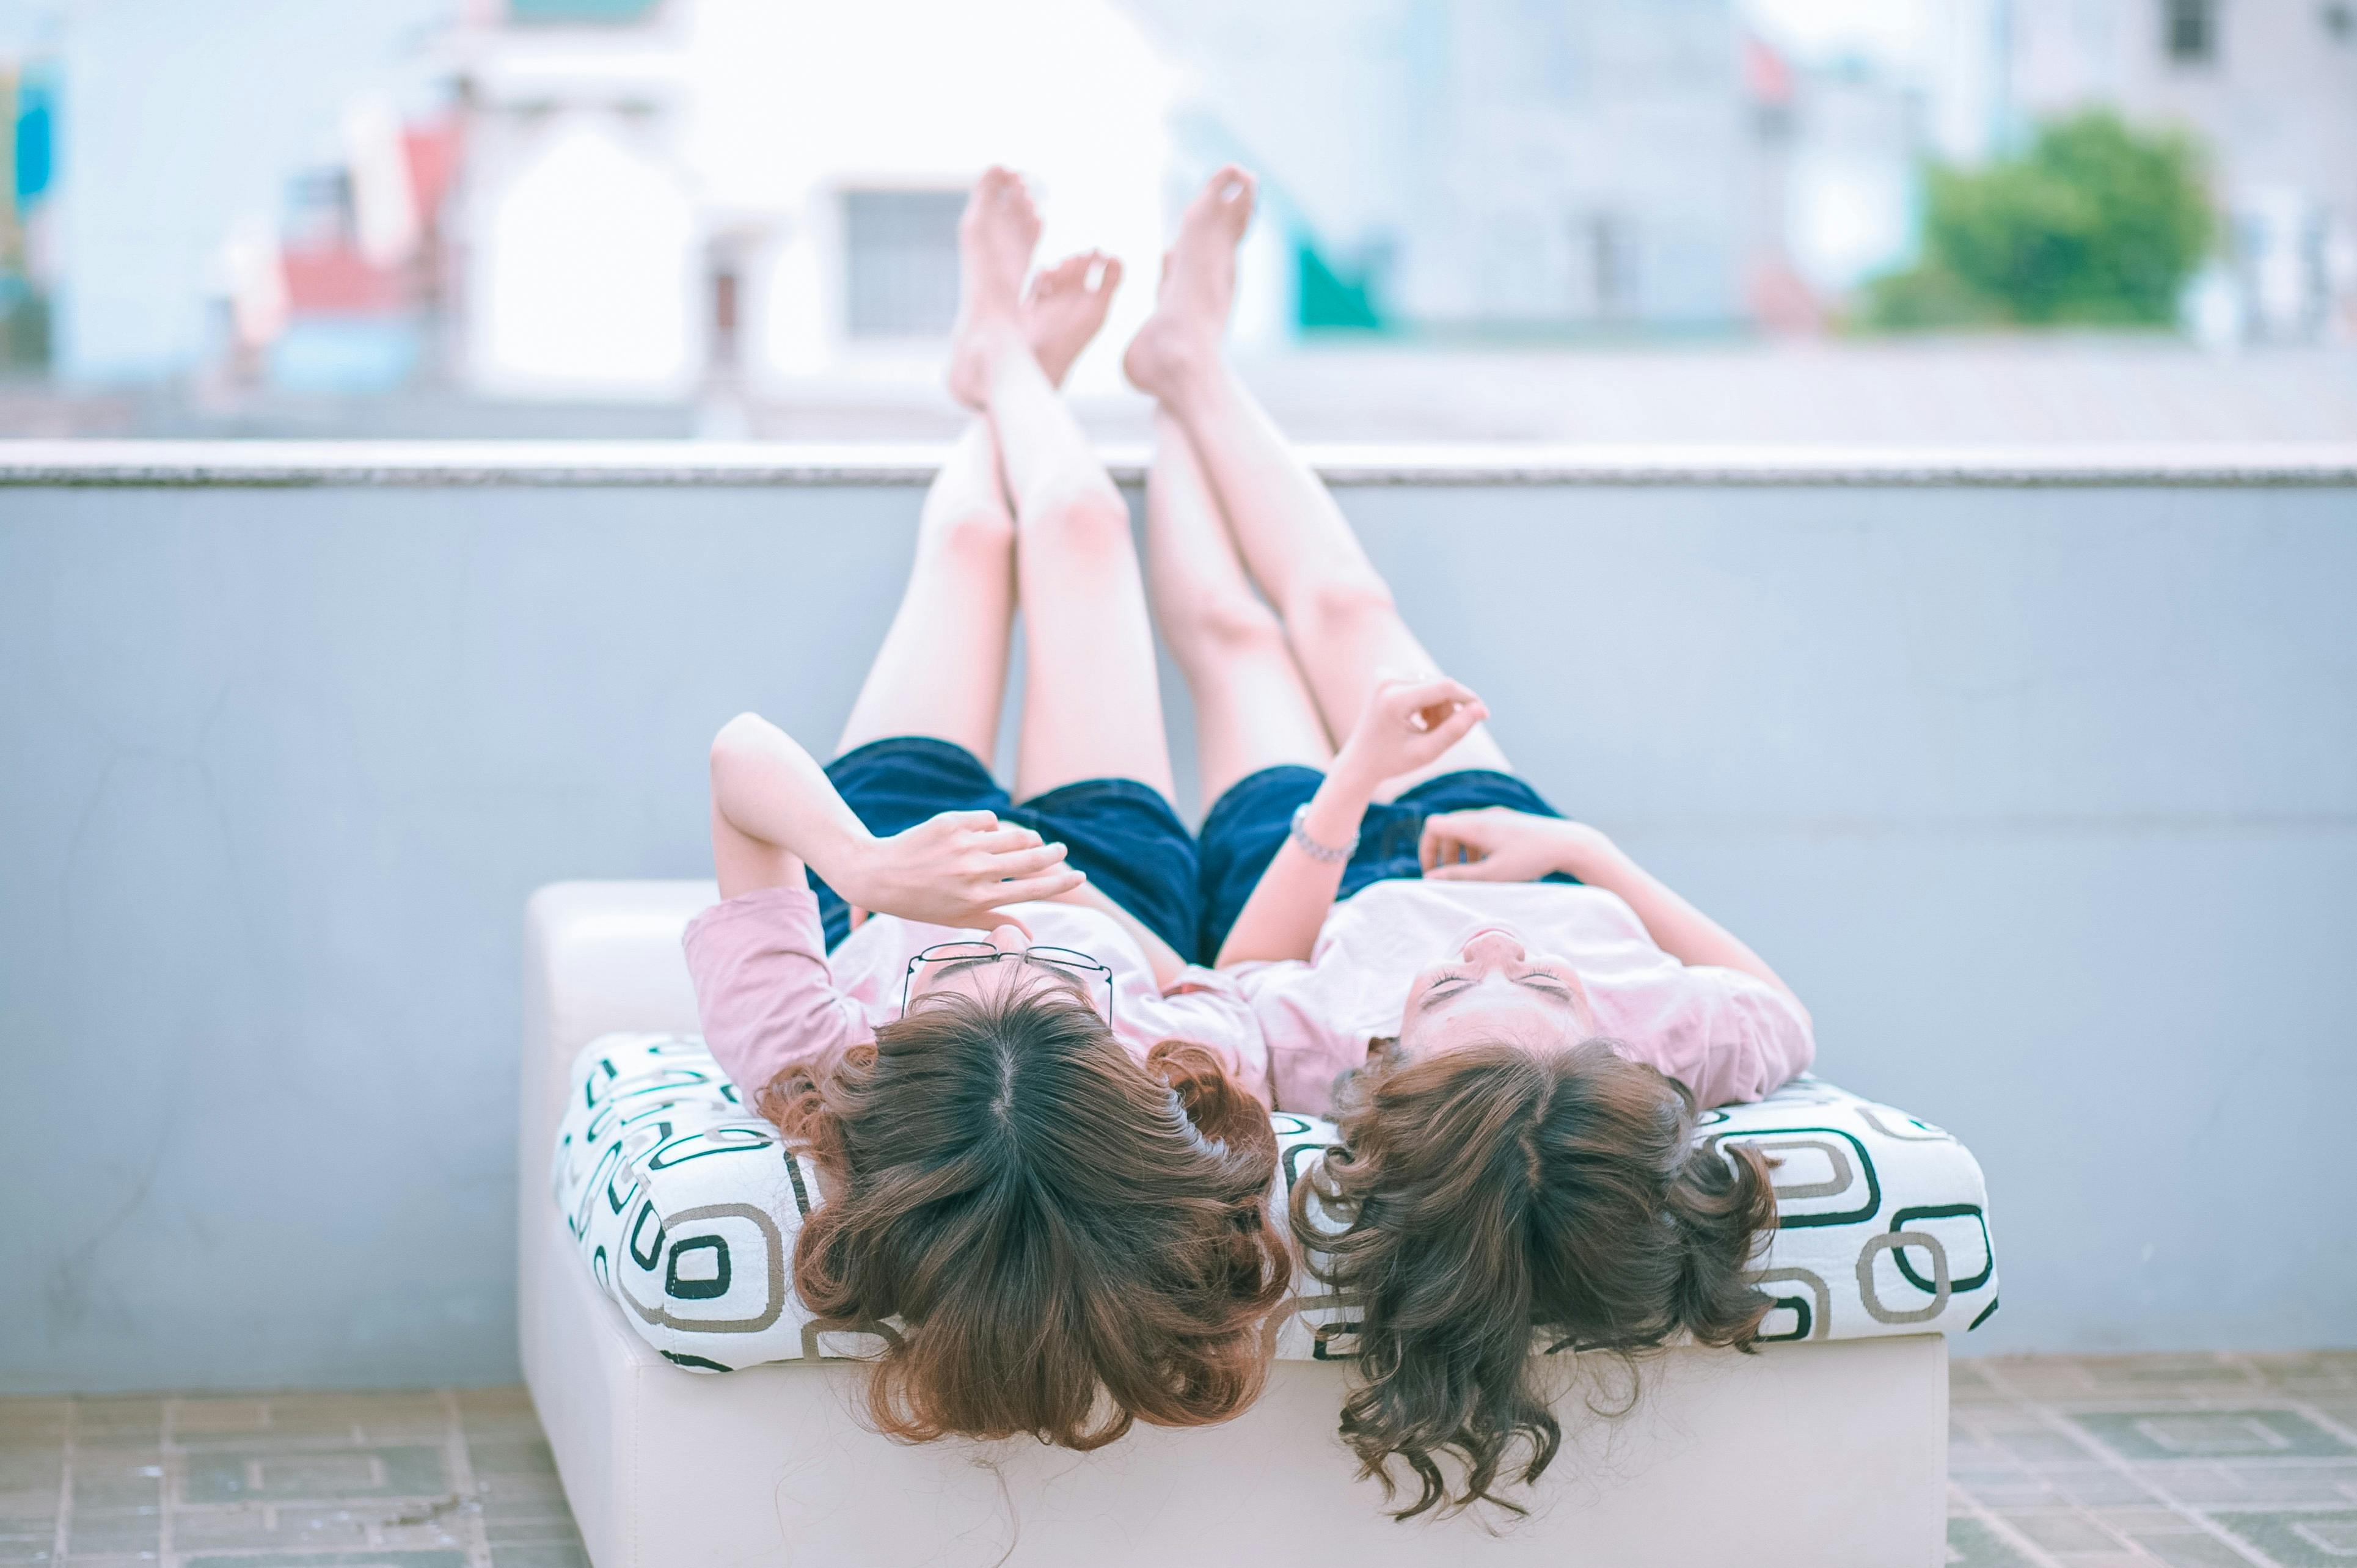 Two girls bonding | Source: Pexels